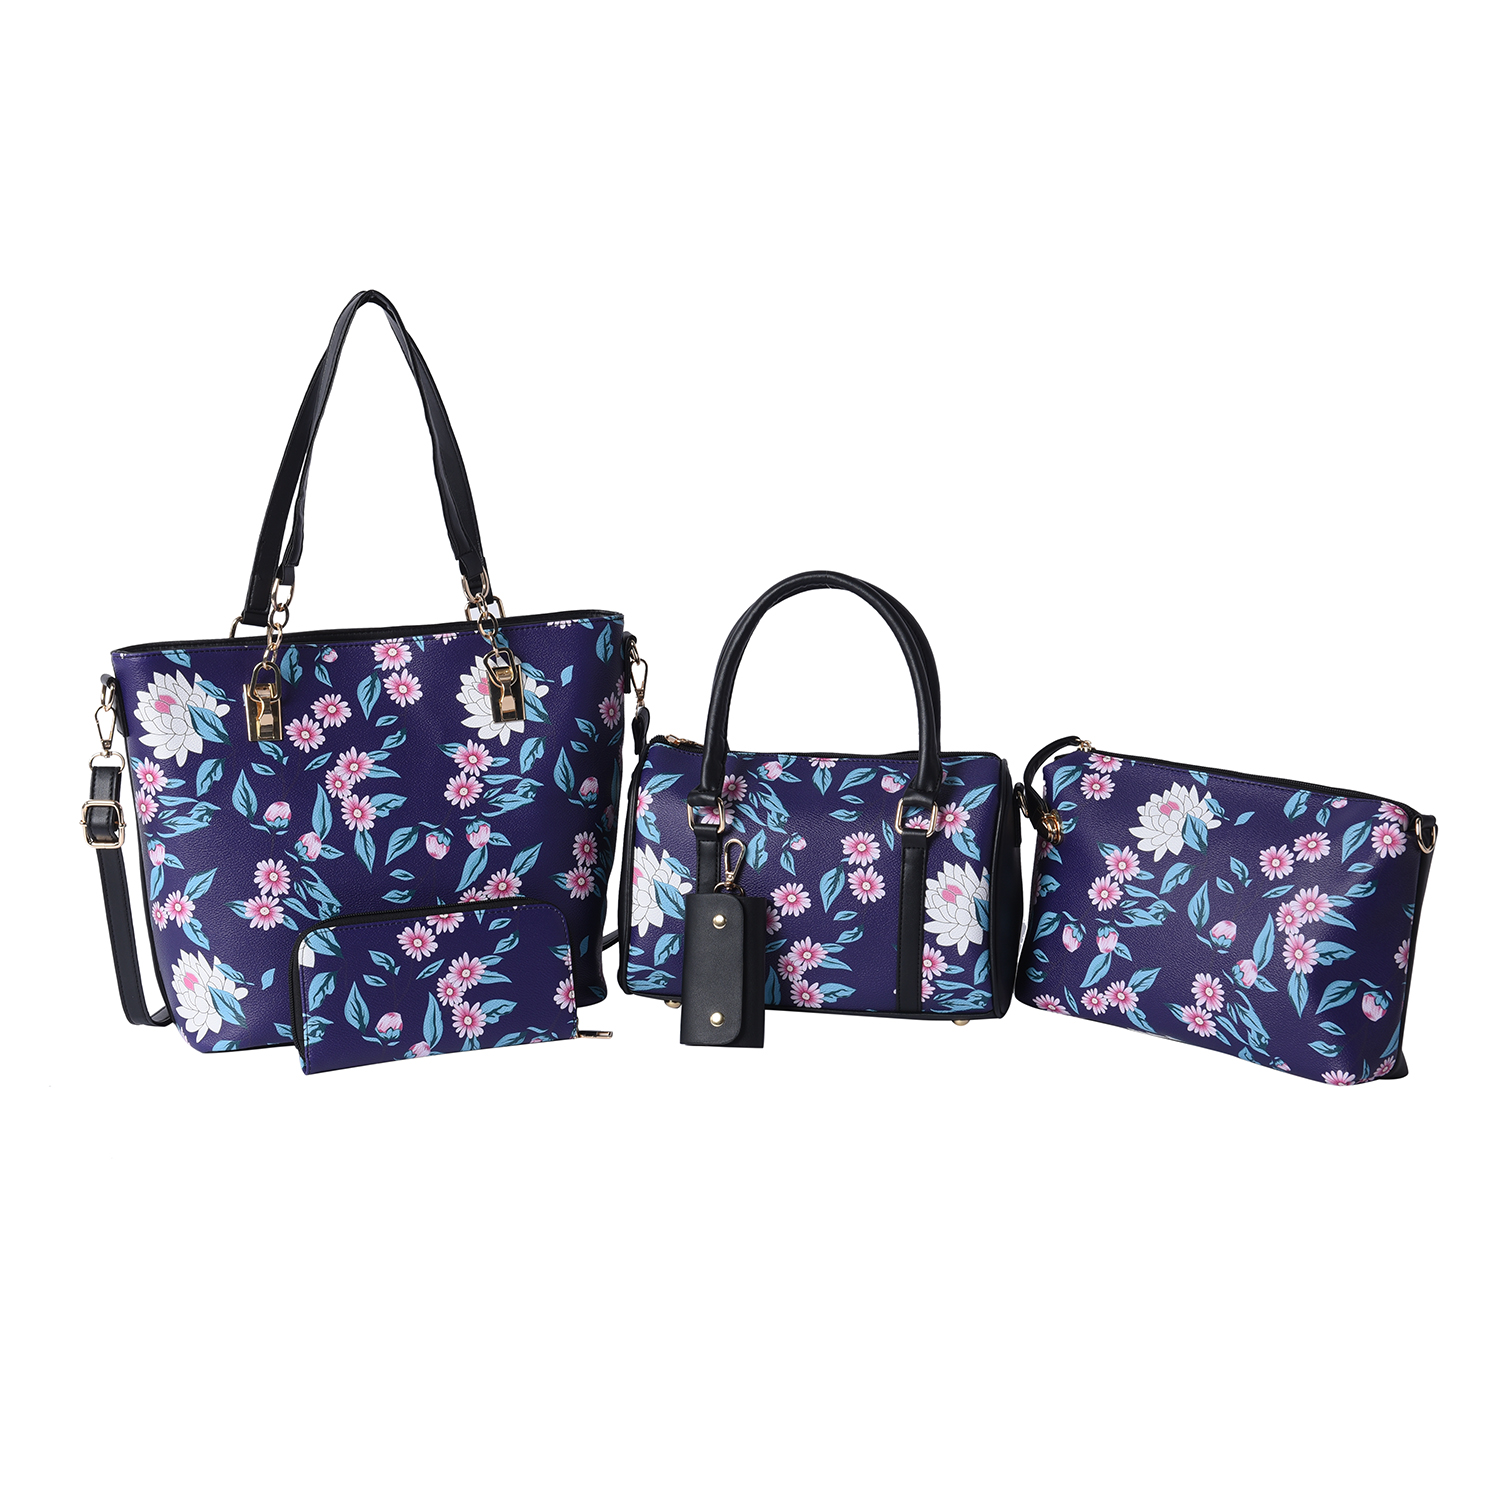 Set of 5 - Floral Pattern Tote Bag (29x12.5x30cm), Convertible Bag (27.5x13x19cm), Crossbody Bag (12.5x9x22cm), Wallet 19x2x10cm) & Key Bag (6x10cm) - Black and Navy